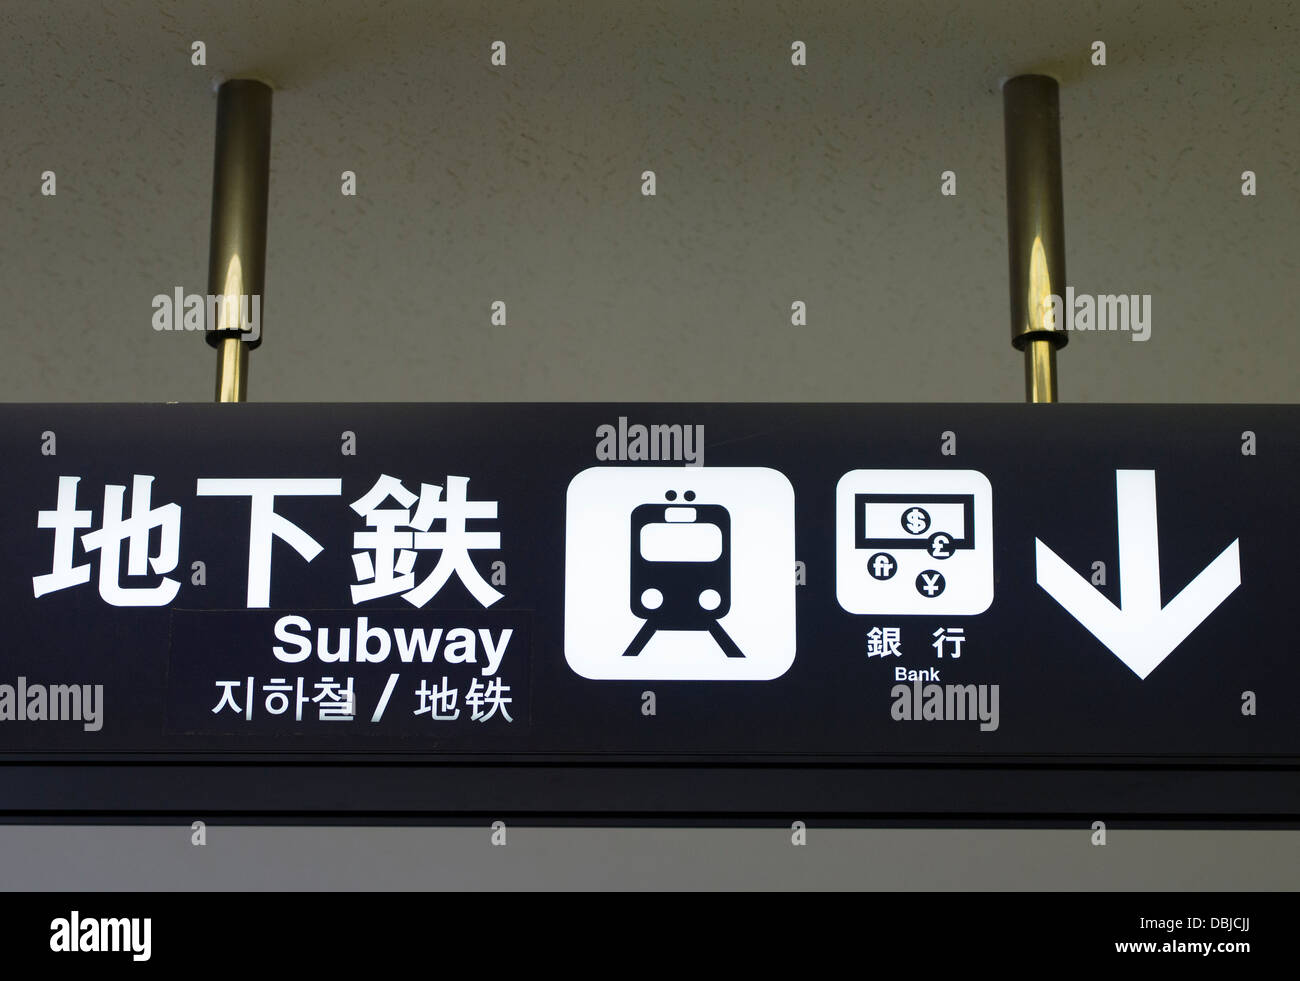 Subway sign, Fukuoka, Japon gare avec l'anglais et le kanji caractères chinois et coréens aussi Banque D'Images